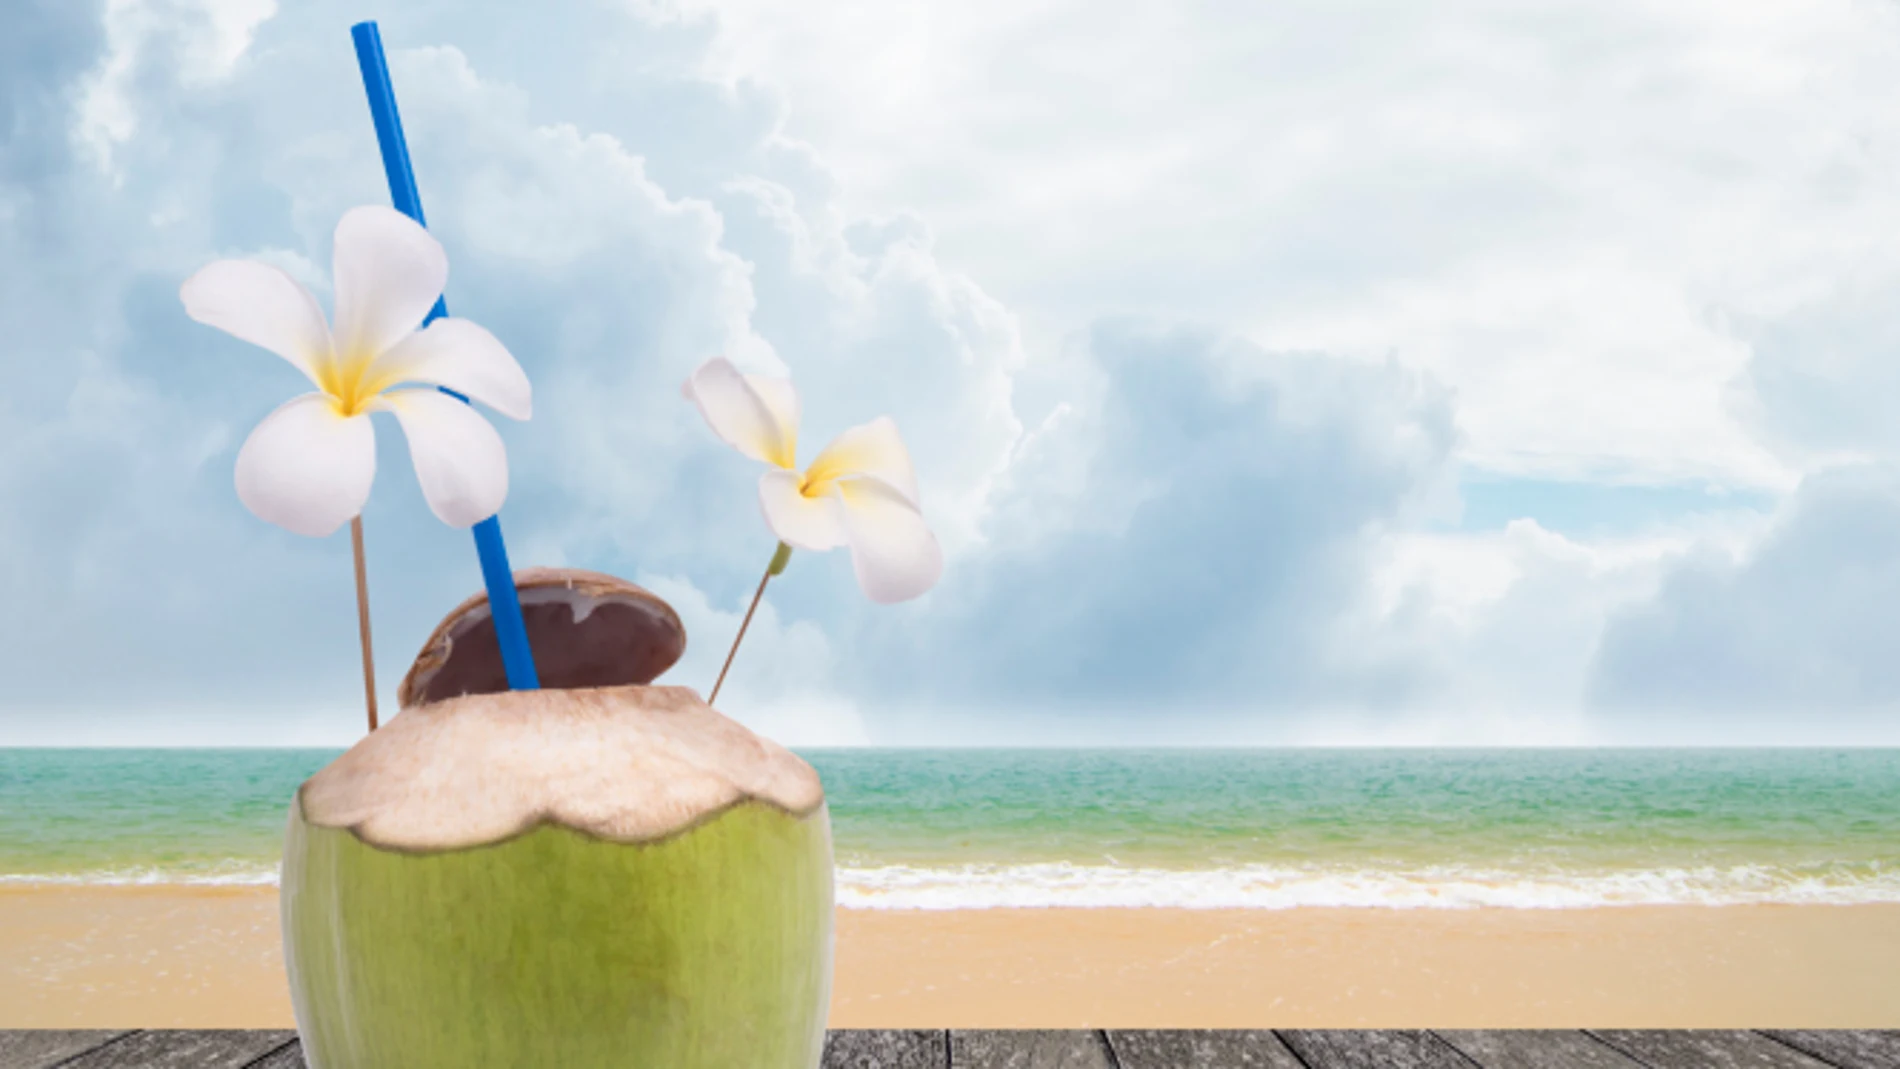 Agua de coco: ¿es realmente más hidratante?